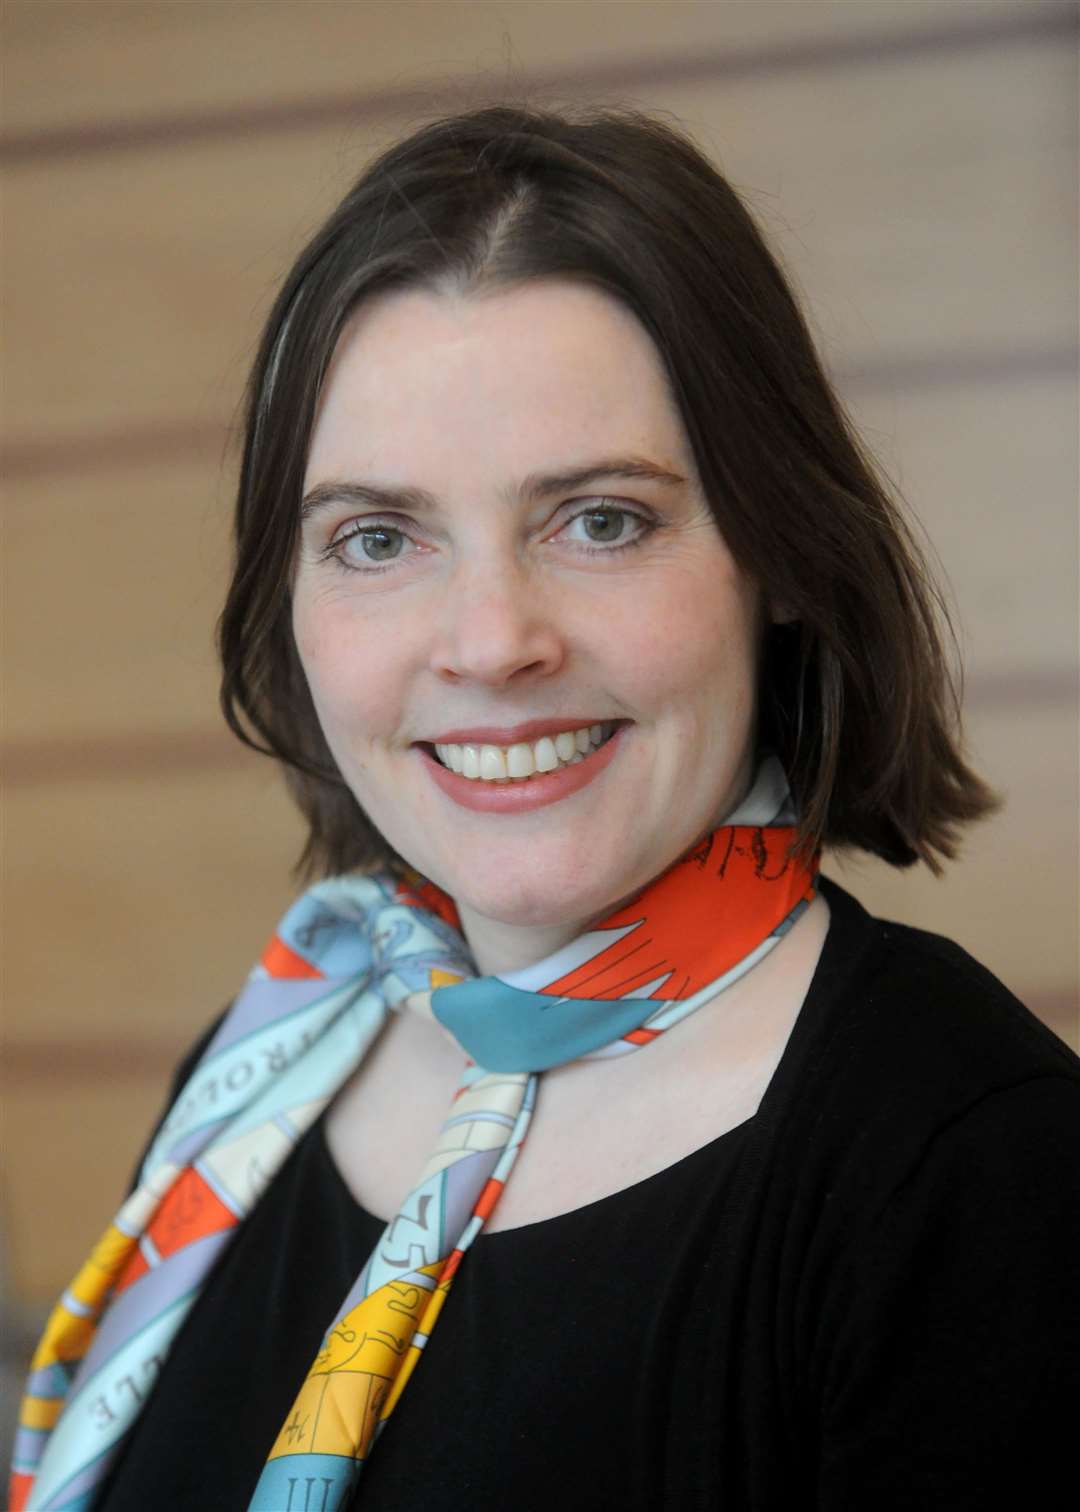 Amanda McLeod, présidente de la National Handwriting Association, pense que l'écriture manuscrite est vitale